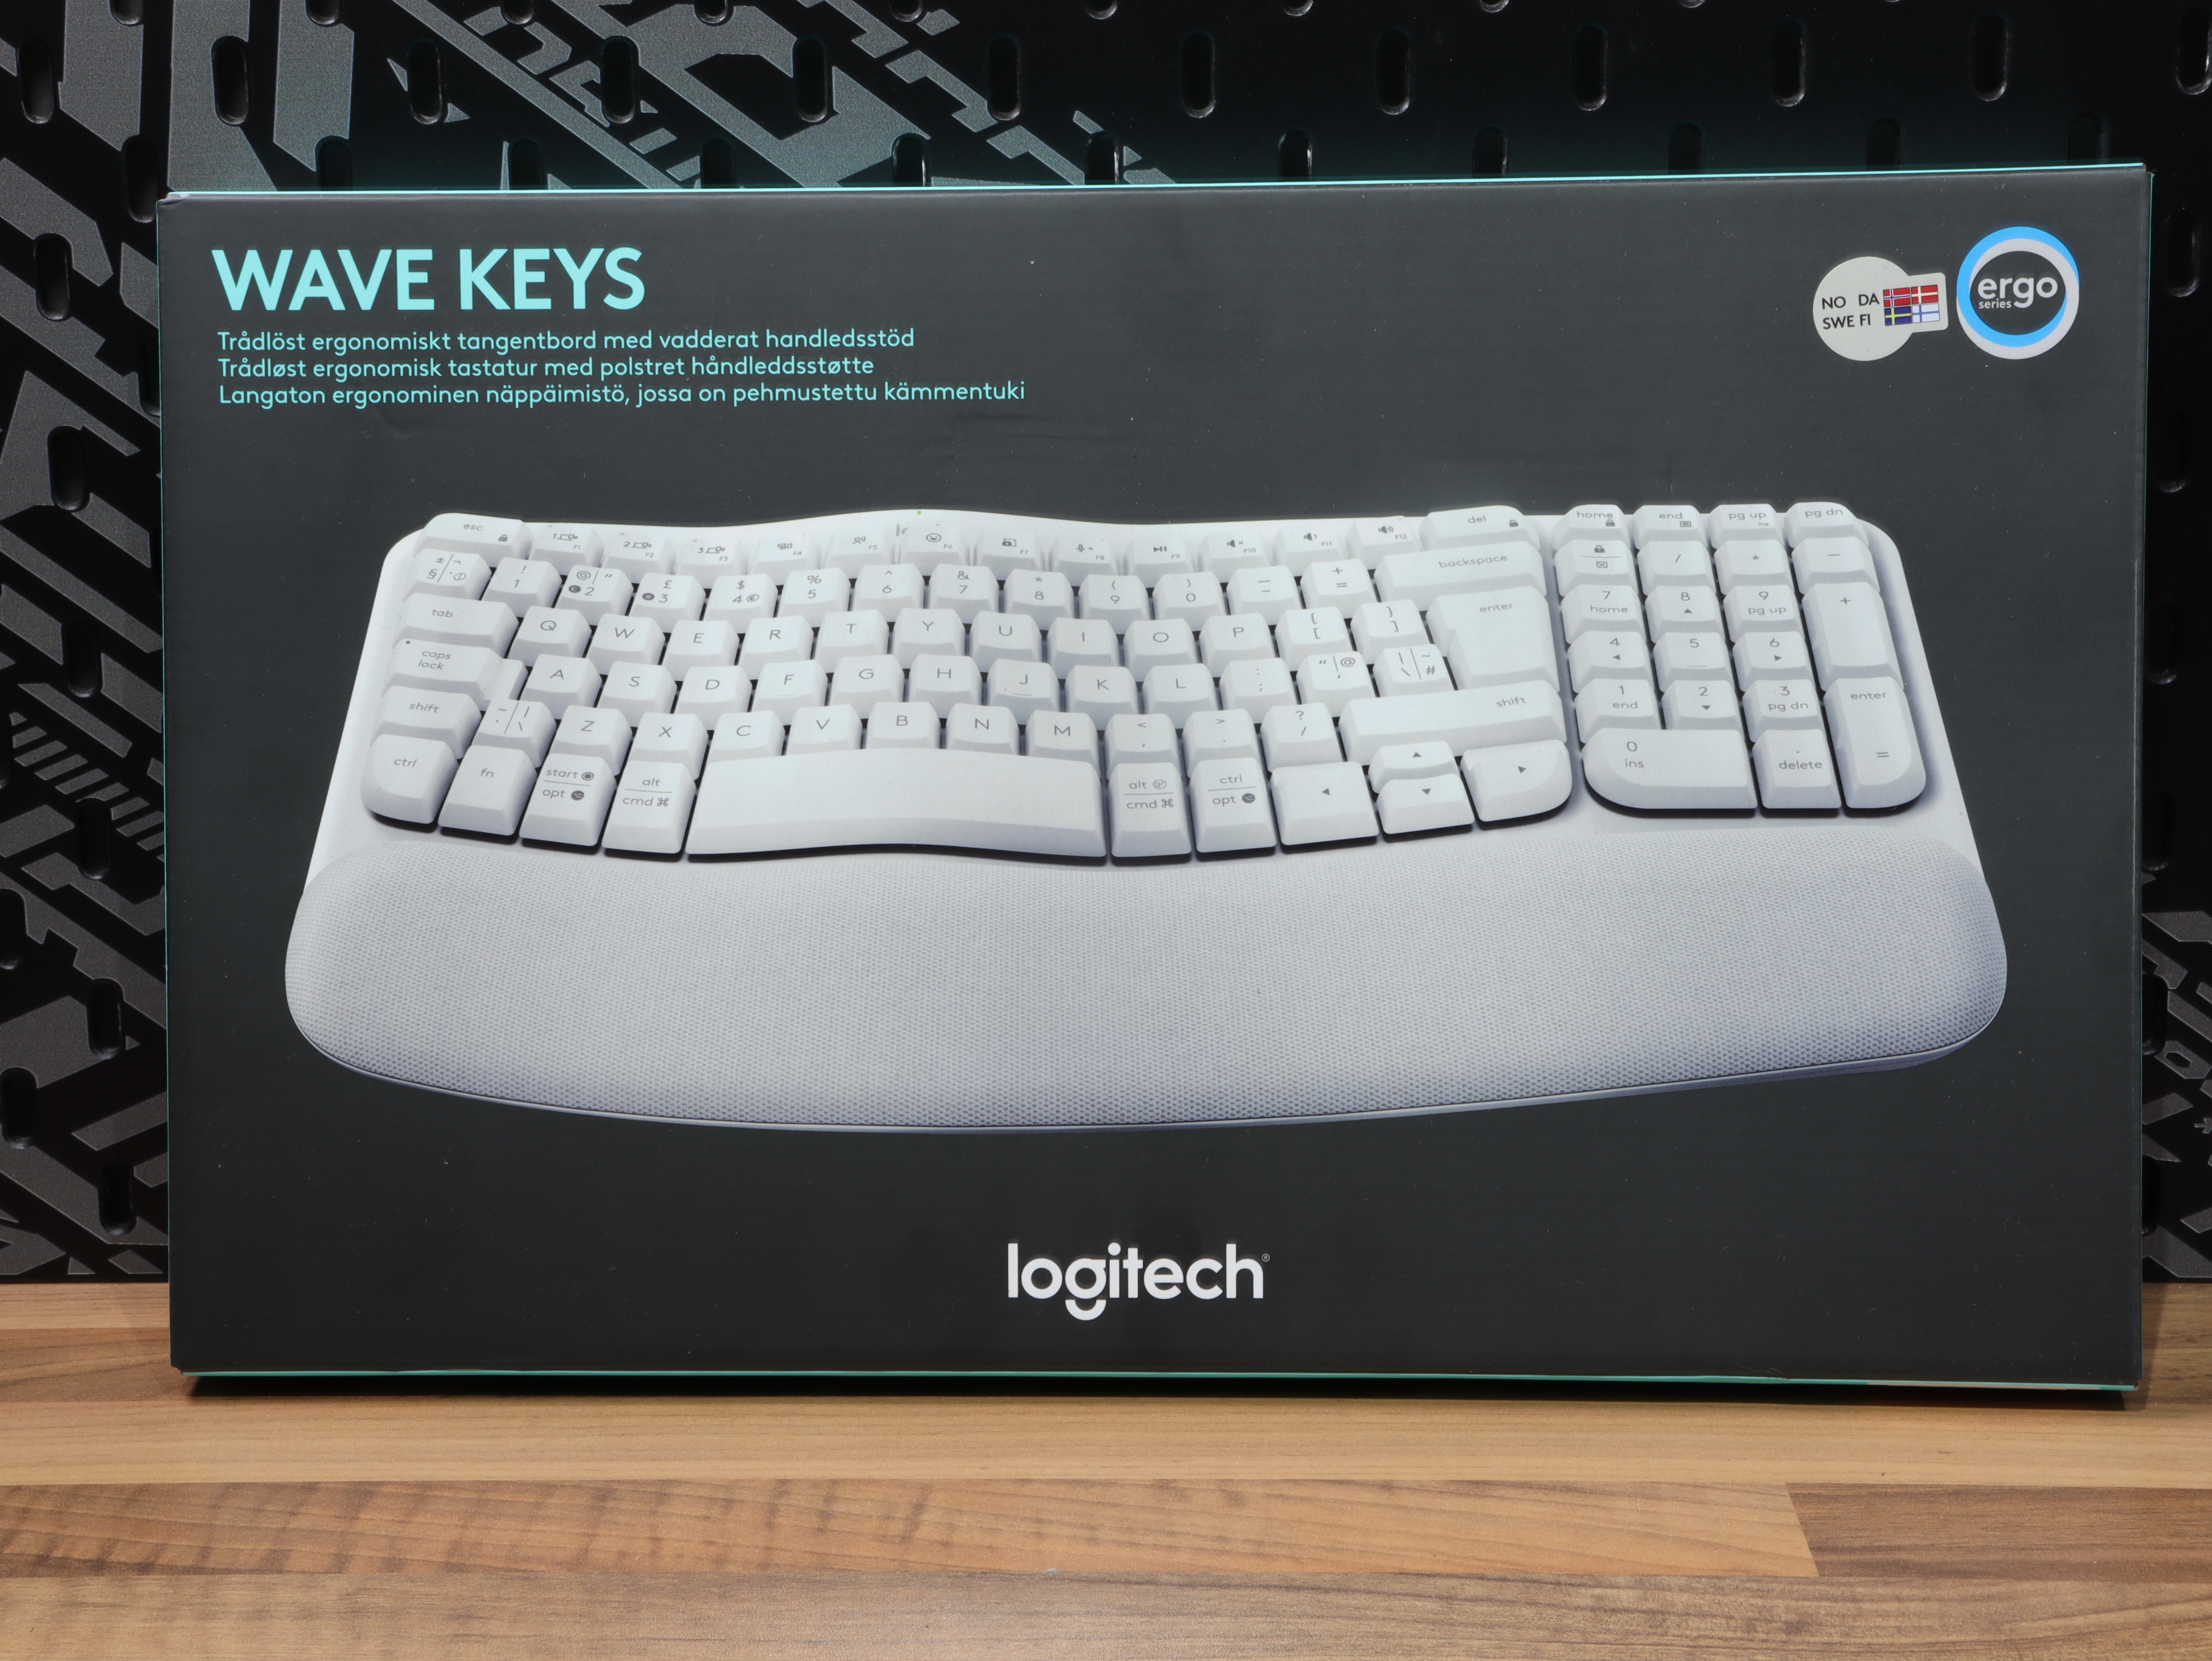 Logitech Wave Keys review: Comfortable, convenient wireless